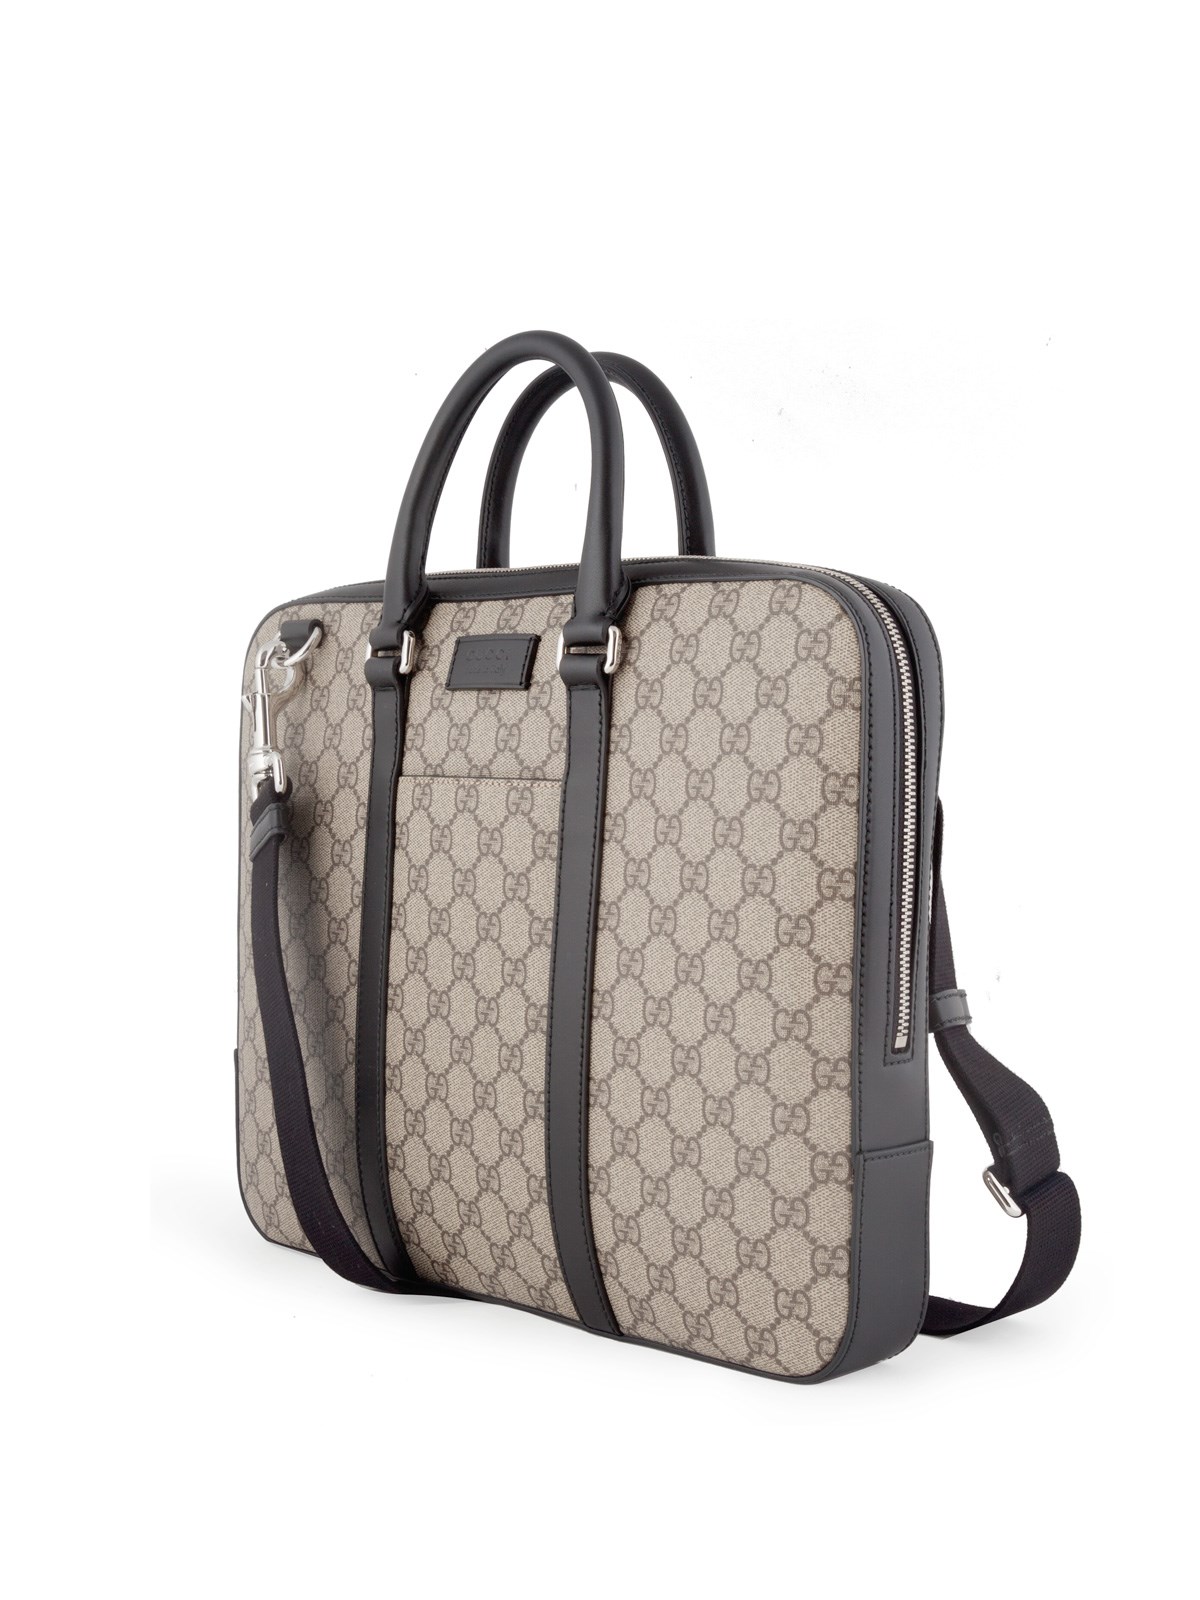 gucci briefcase bag